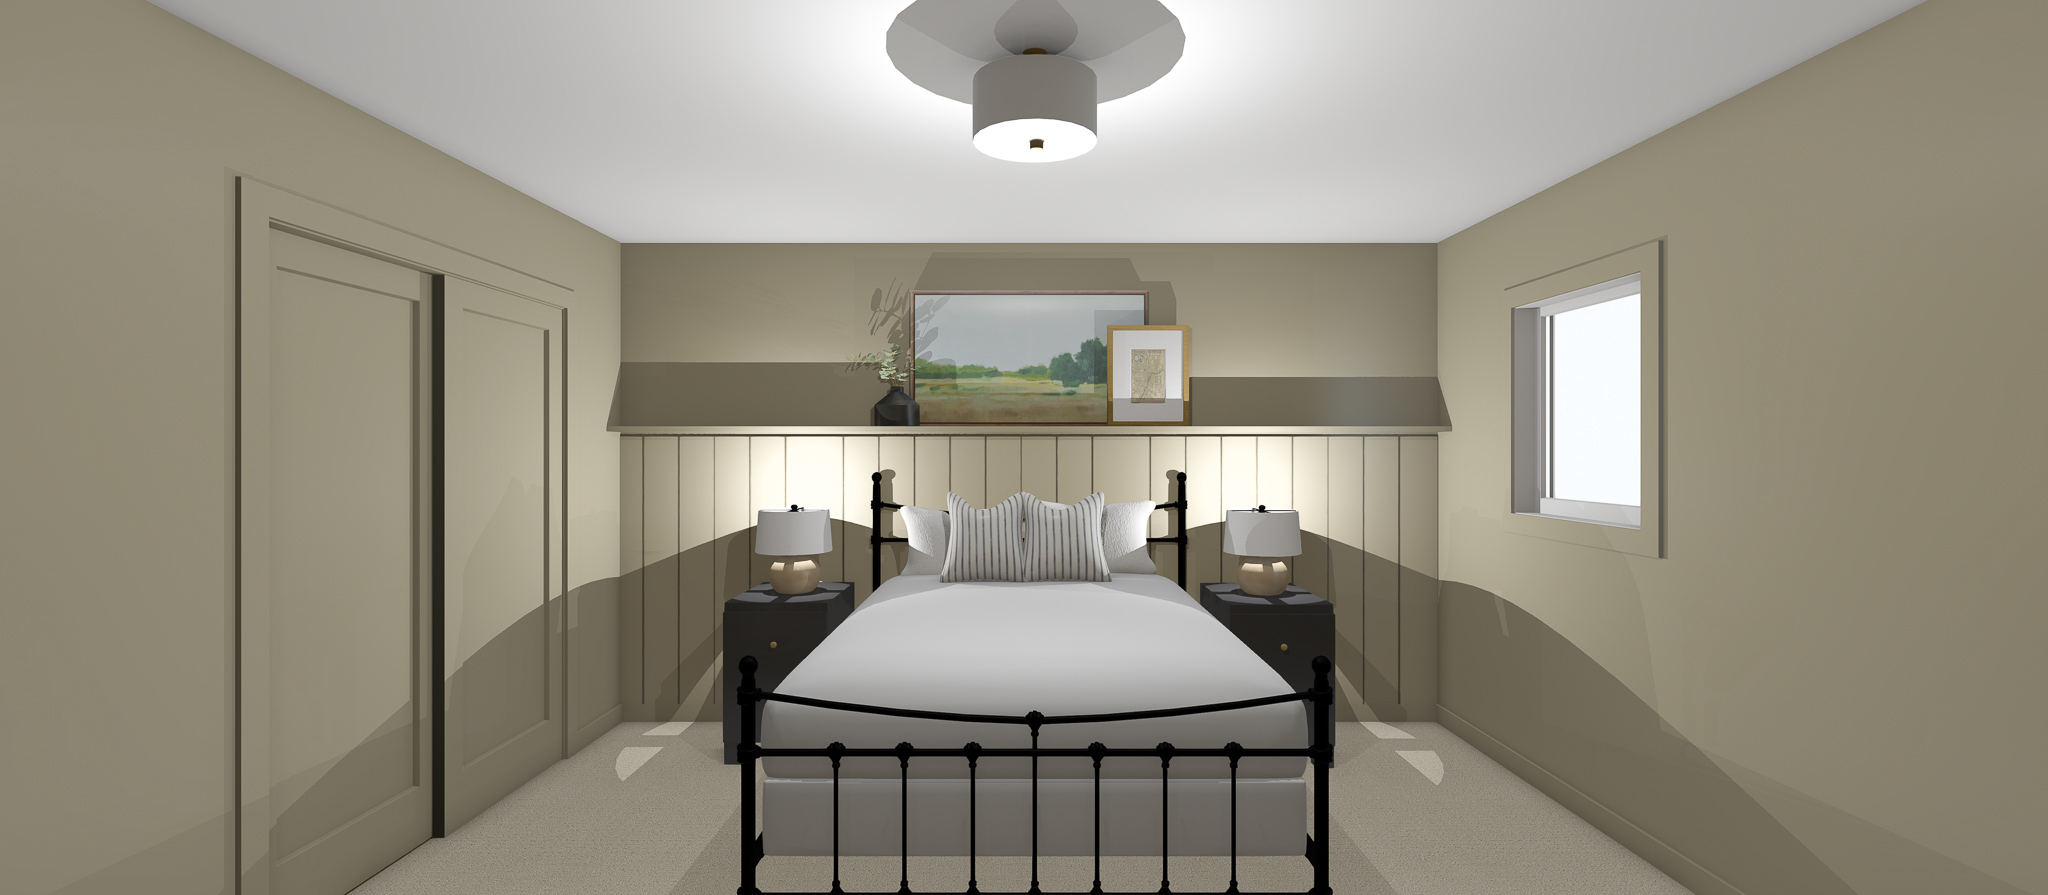 Guest Bedroom Design 2